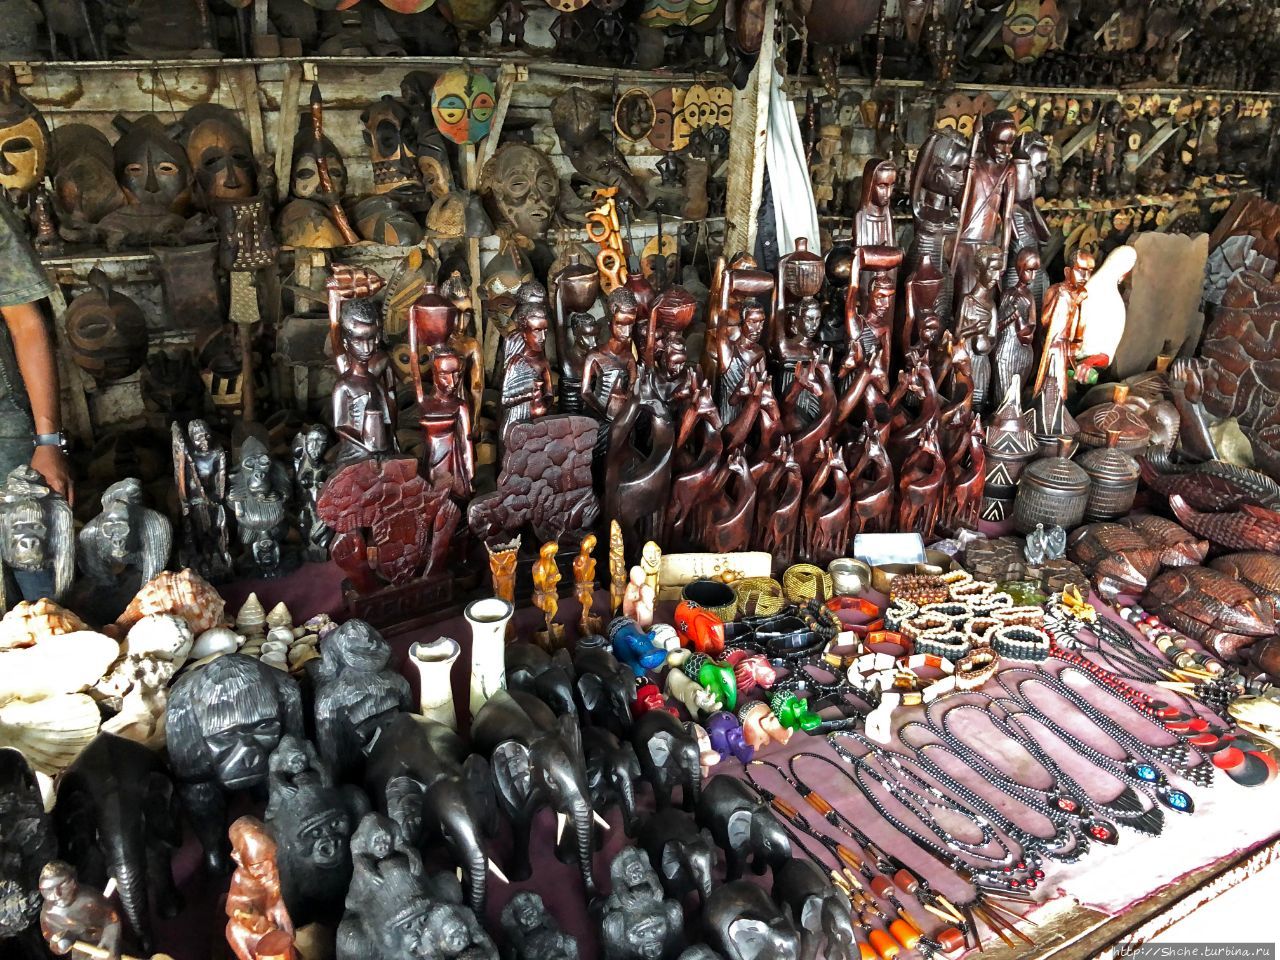 Рынок искусства и сувениров Гома, ДР Конго